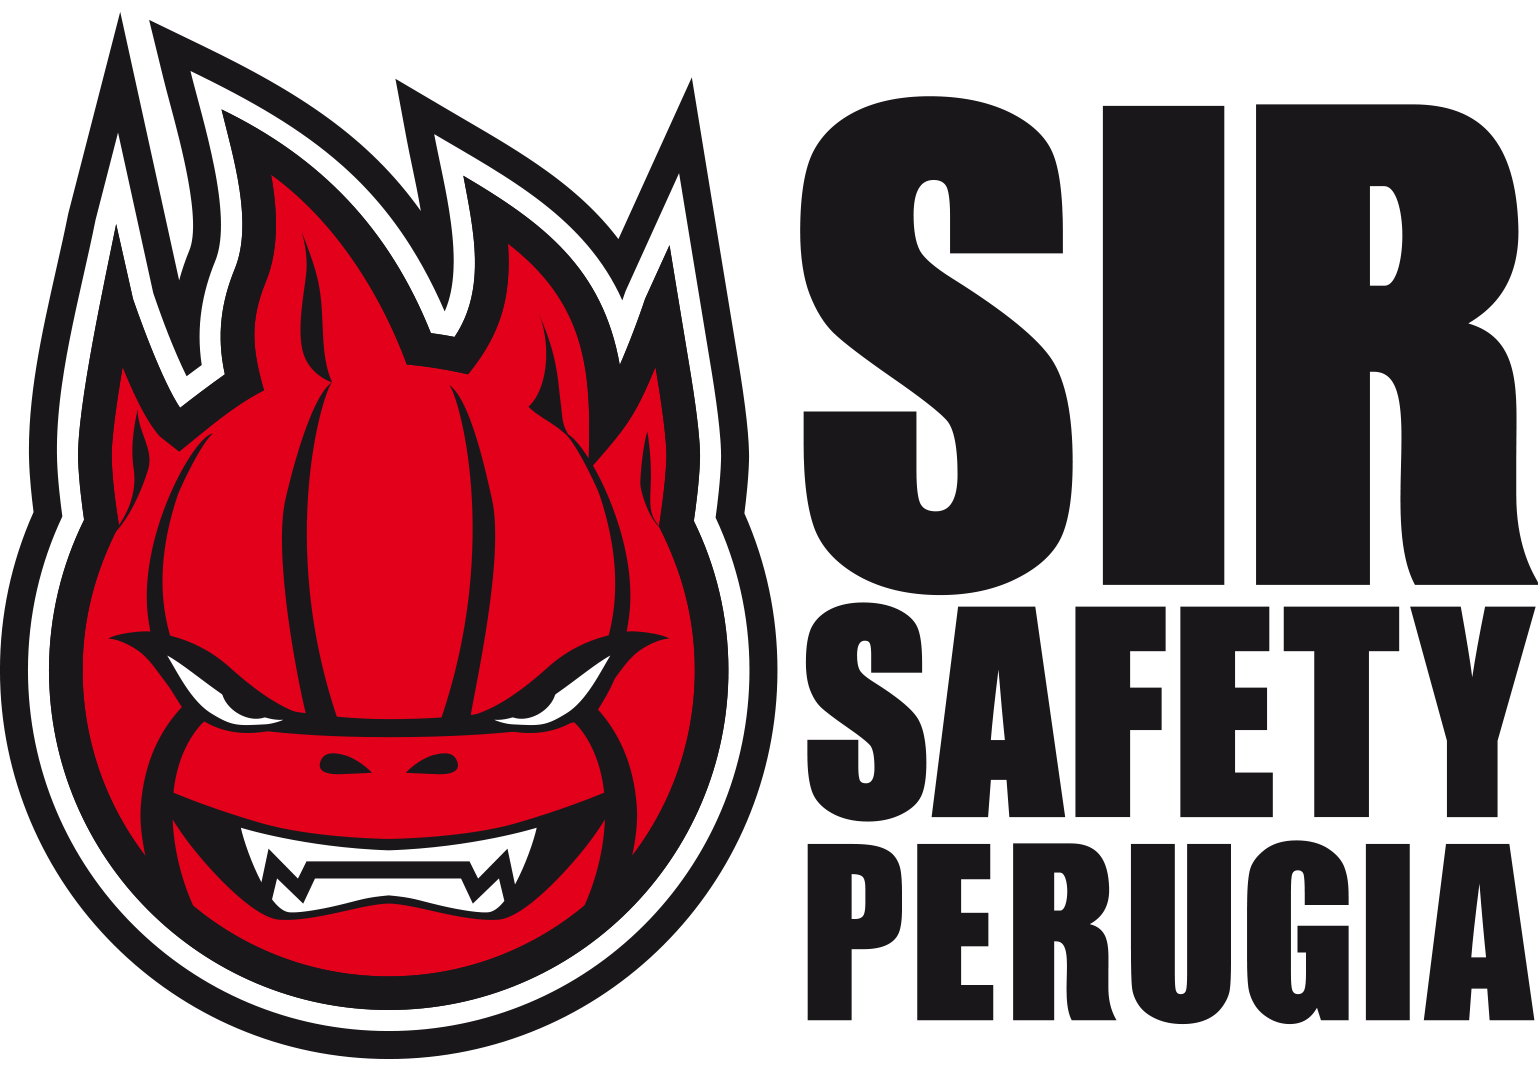 sir-perugia-logo